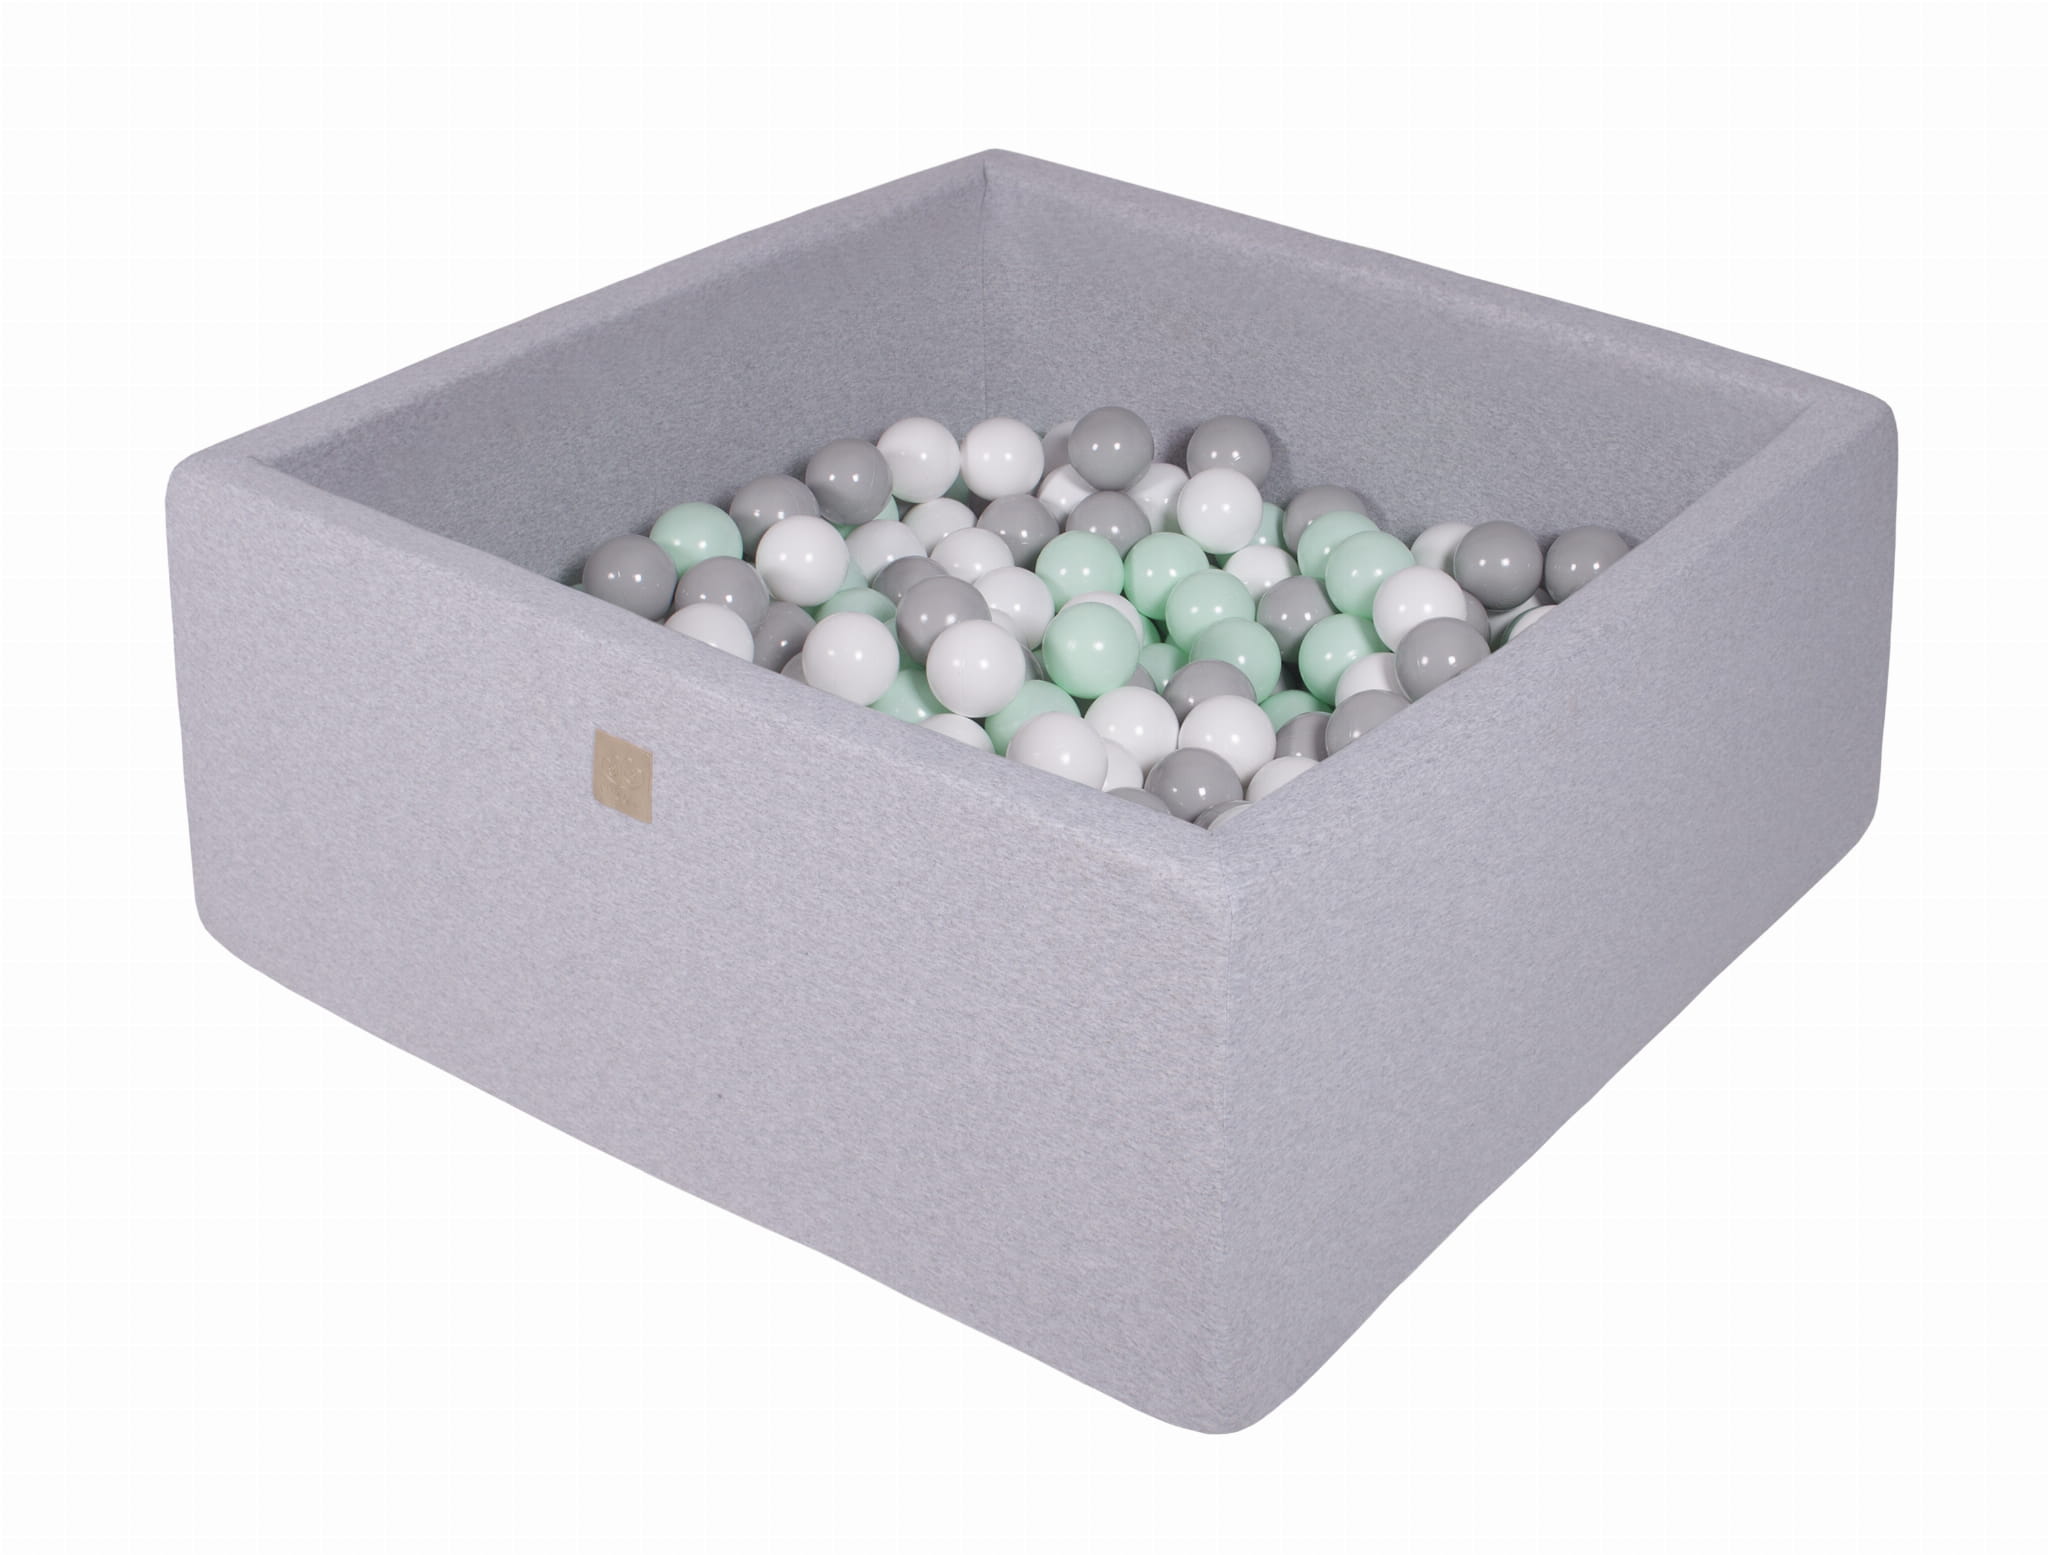 MeowBaby Piscina de bolas gris claro 300 ball azul/transparent/azul bebé/plata